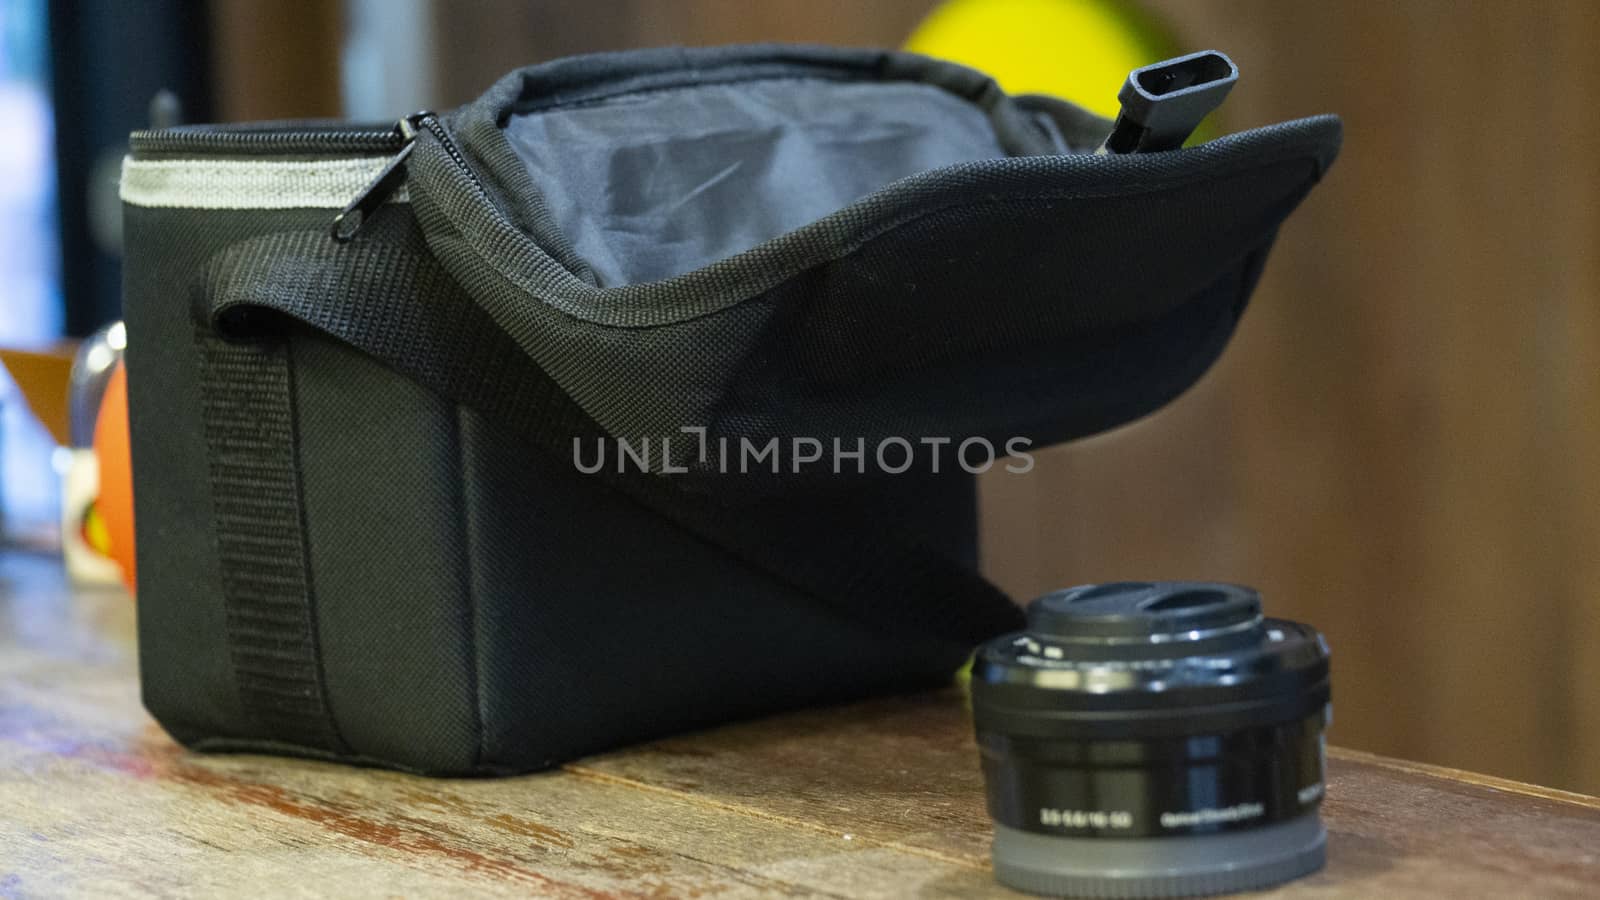 Camera lens beside a camera holder bag